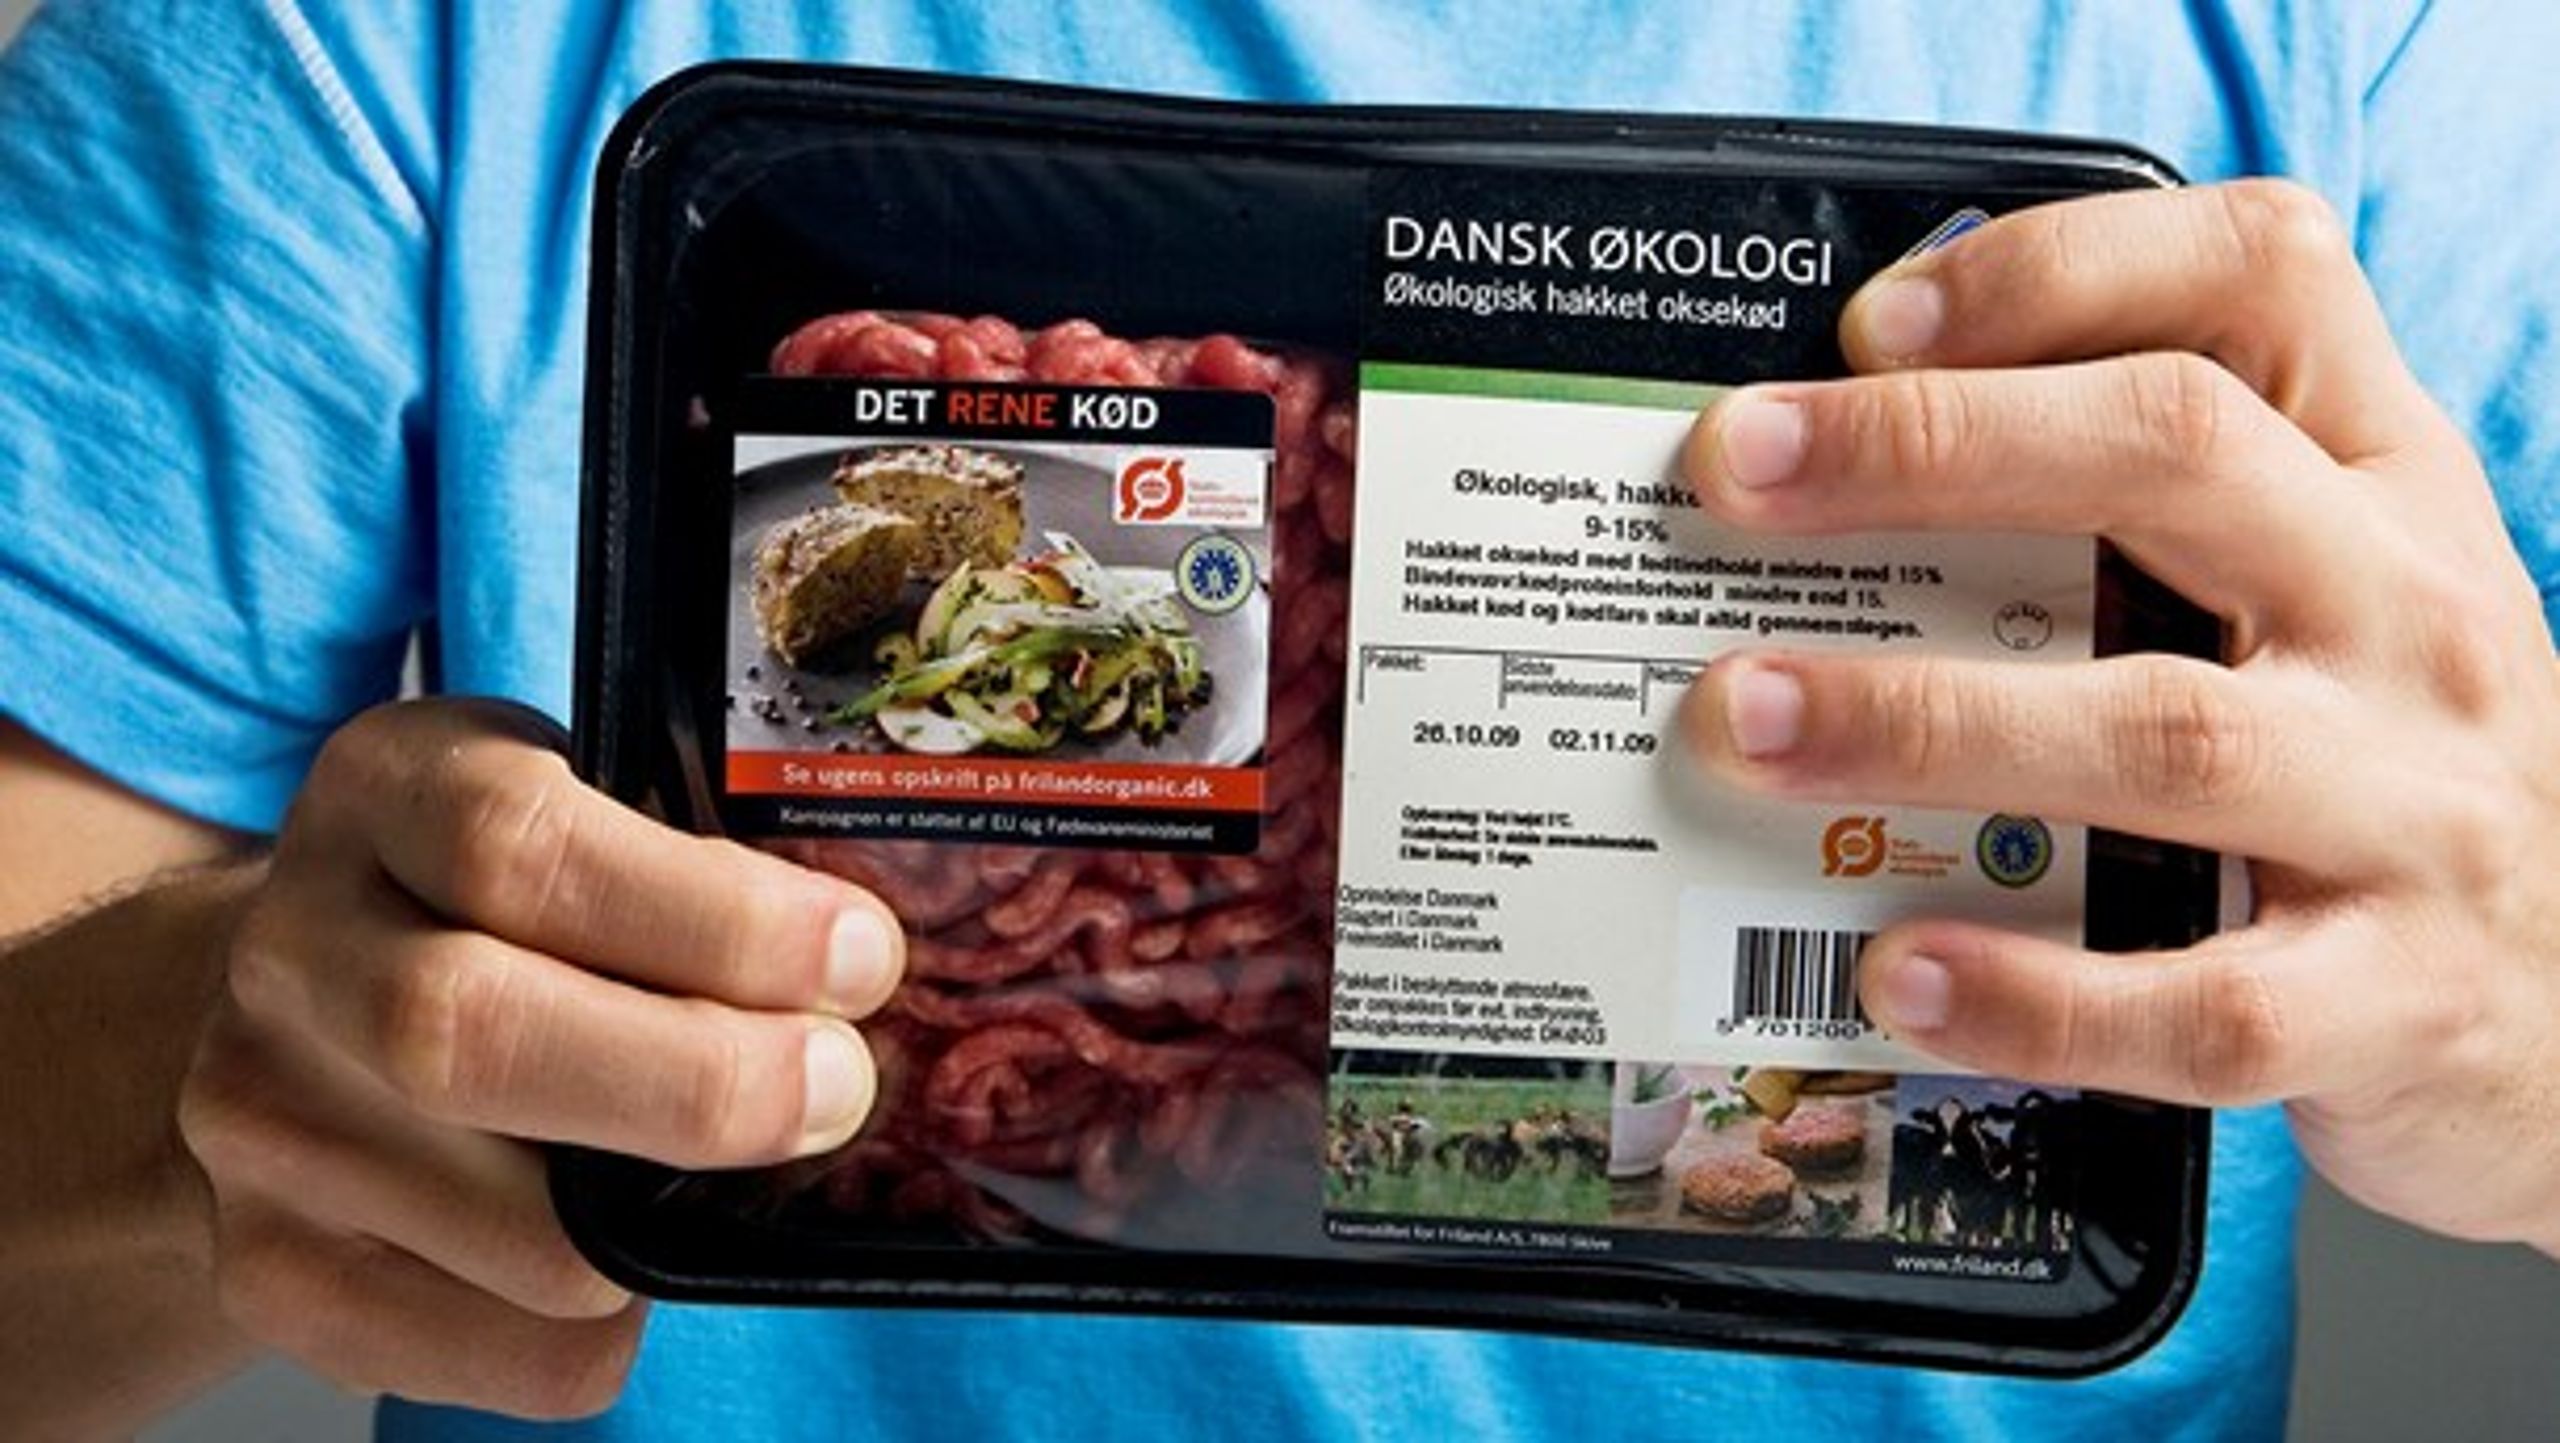 Klimamærkning af fødevarer indebærer en stor risiko for forvirring hos forbrugerne, mener Dansk Erhverv.